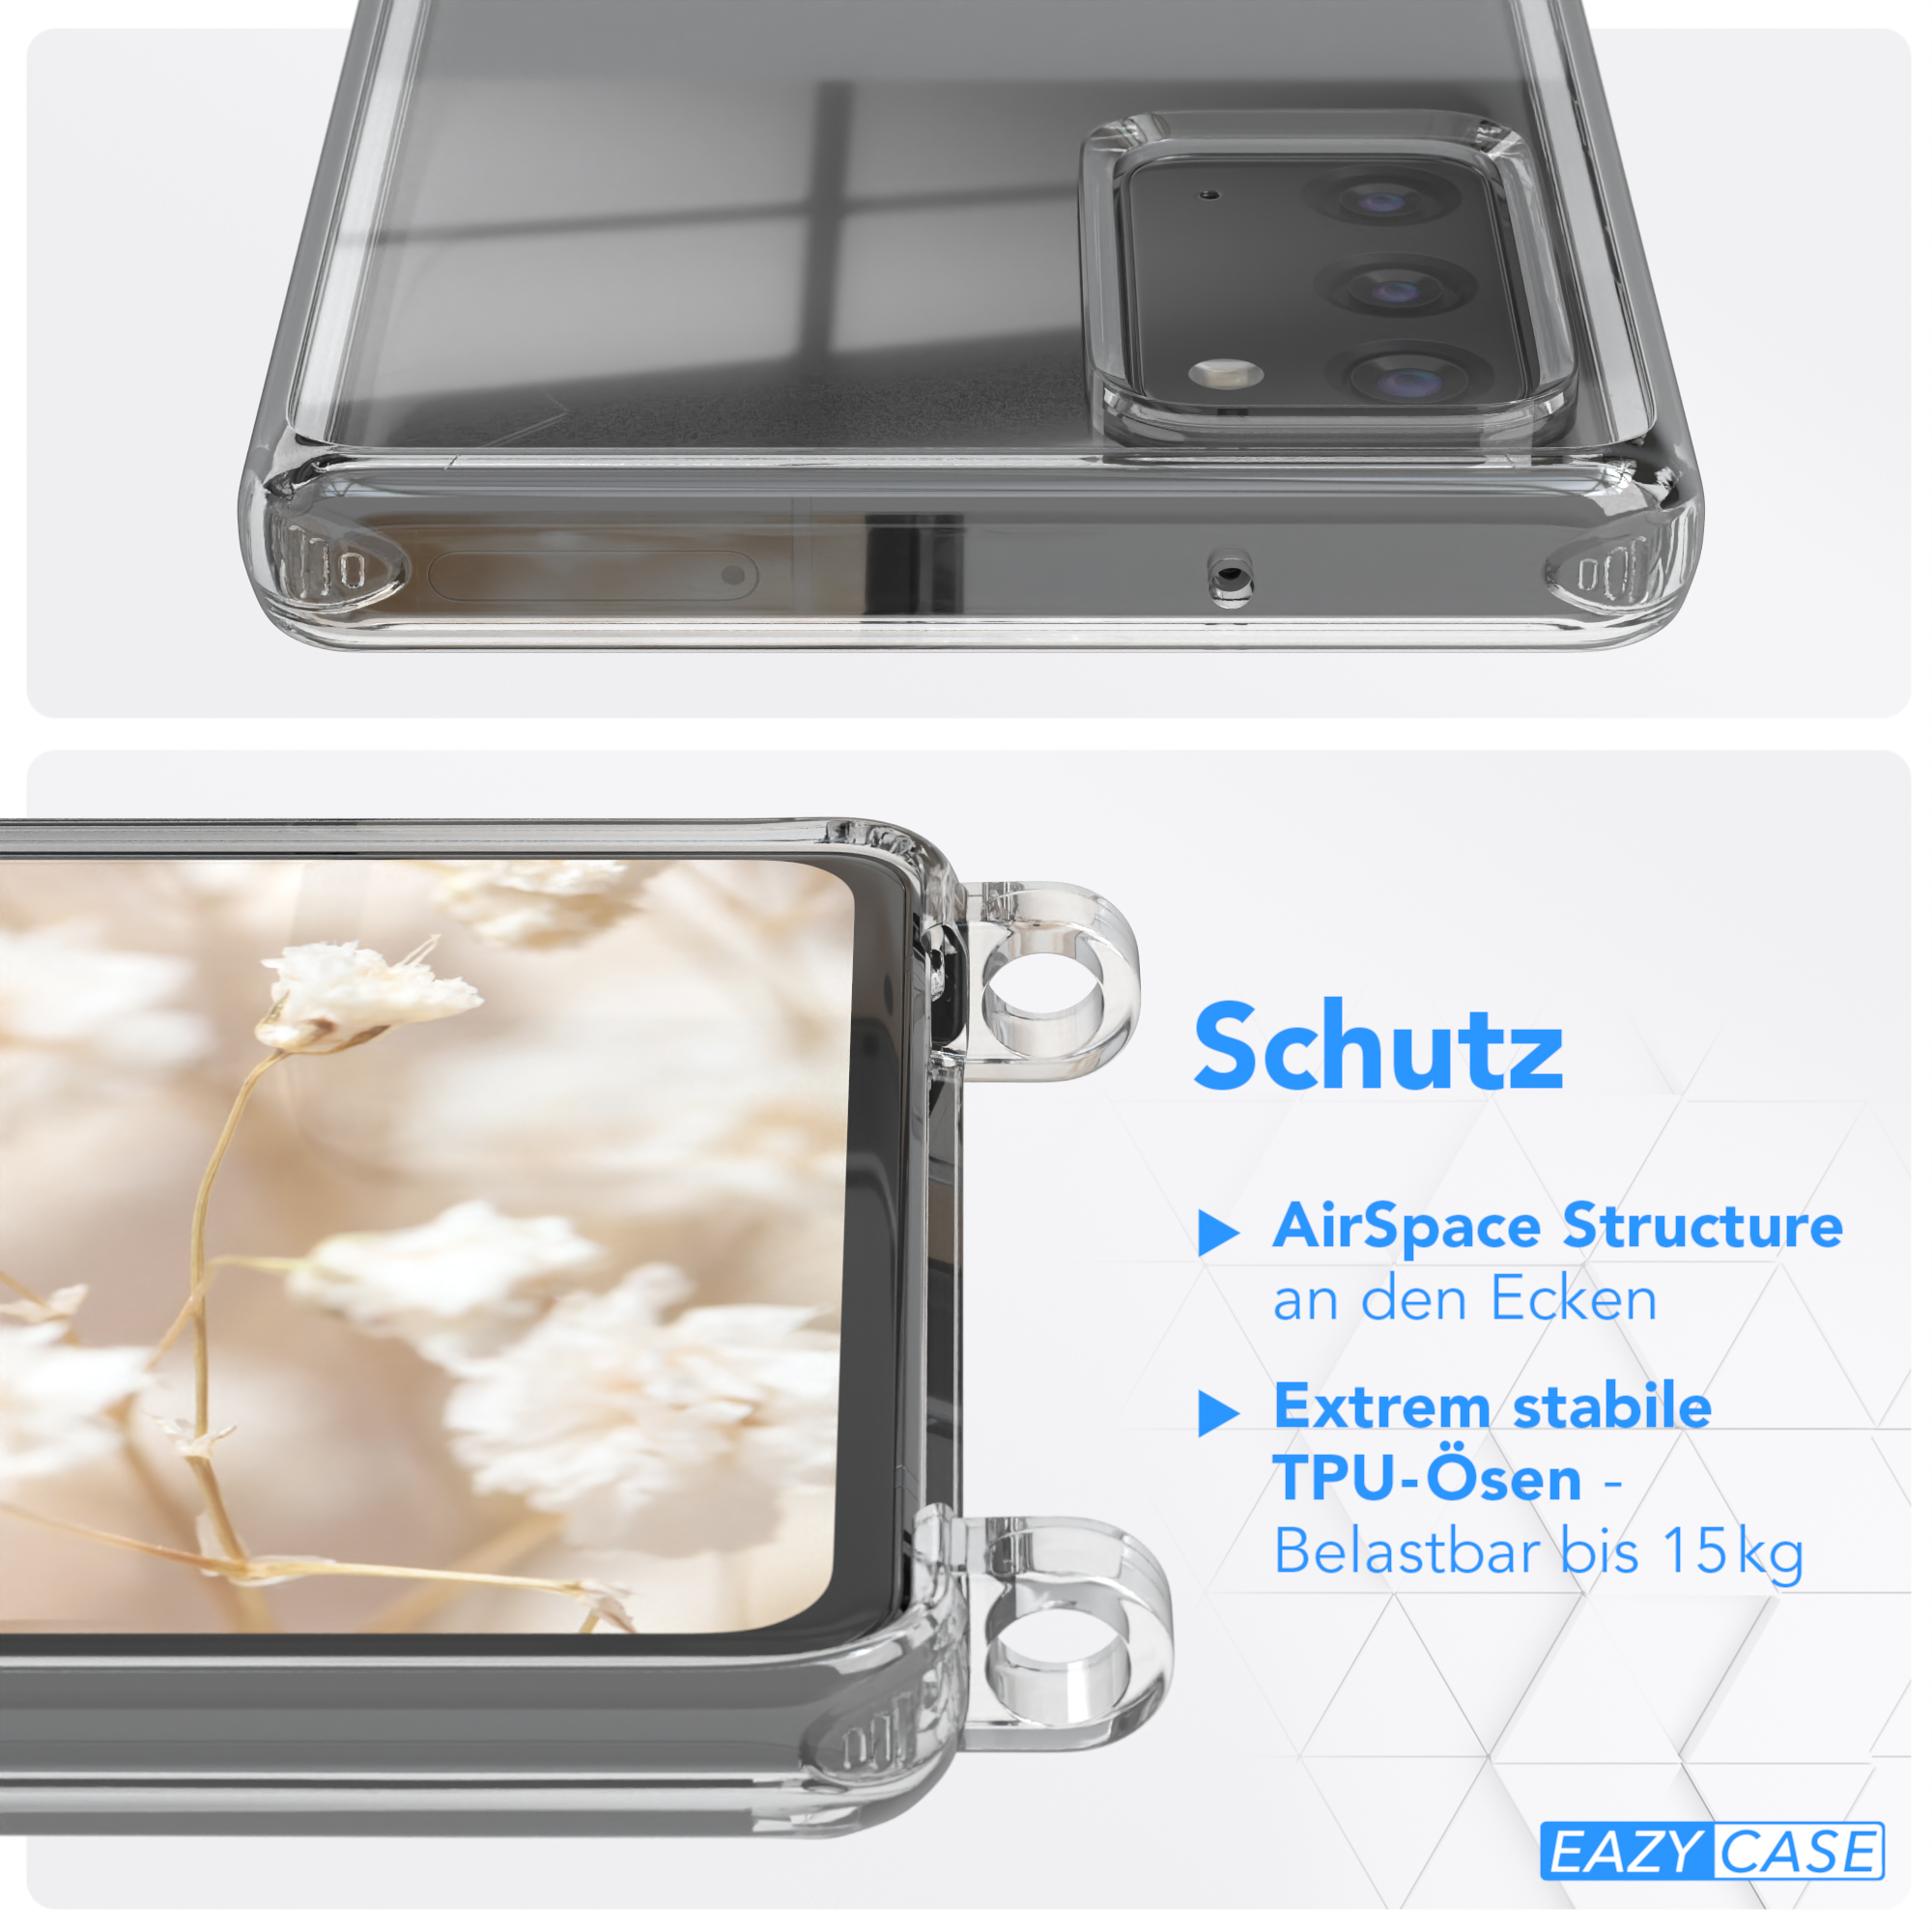 Note Transparente mit Boho Rot Style, 5G, Note 20 / Galaxy Samsung, CASE Umhängetasche, EAZY / Kordel 20 Braun Handyhülle